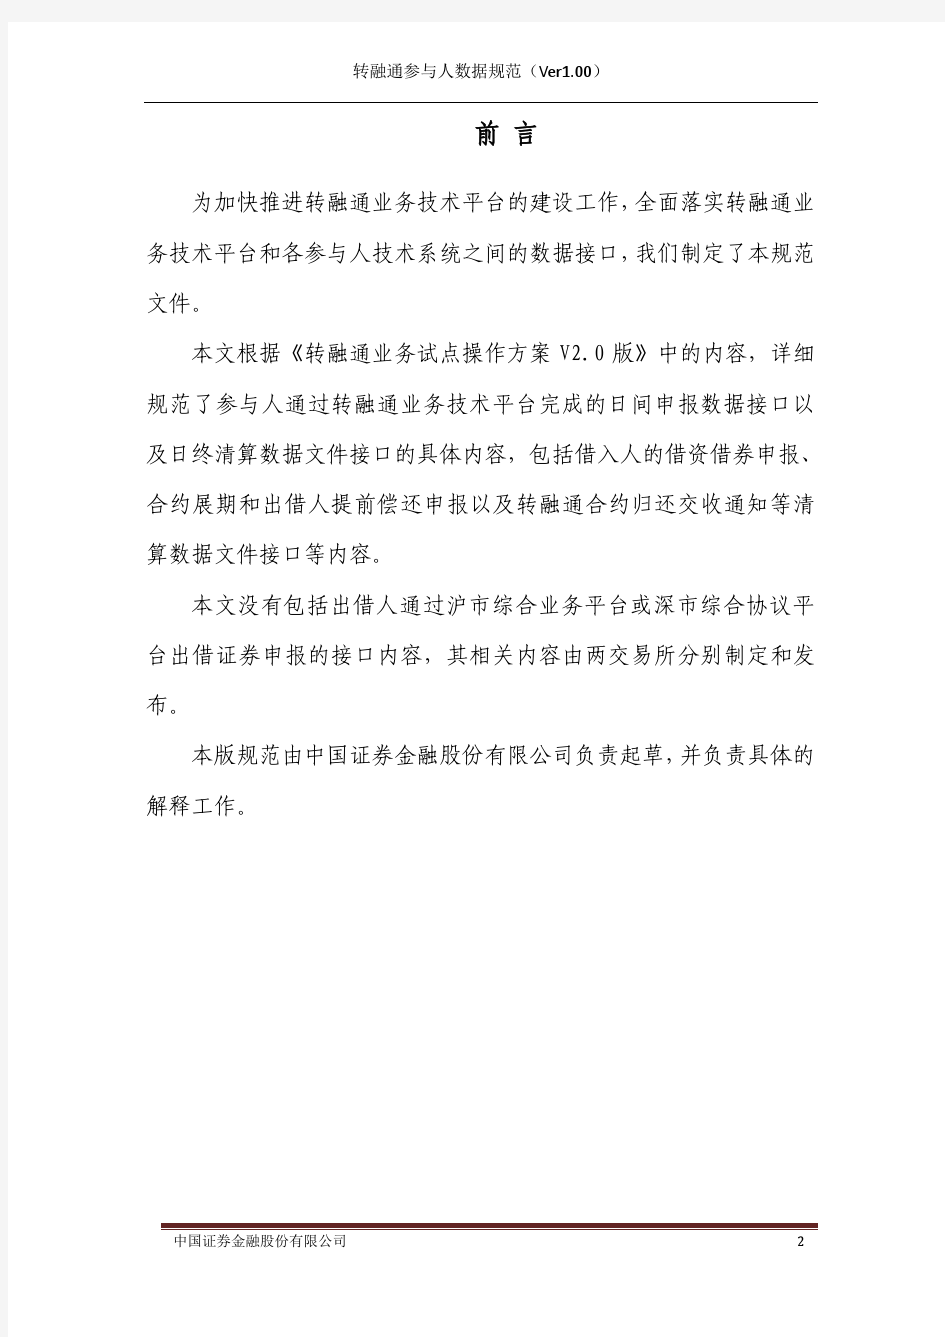 中国证券金融公司转融通参与人数据接口规范(Ver1.00)_20111207